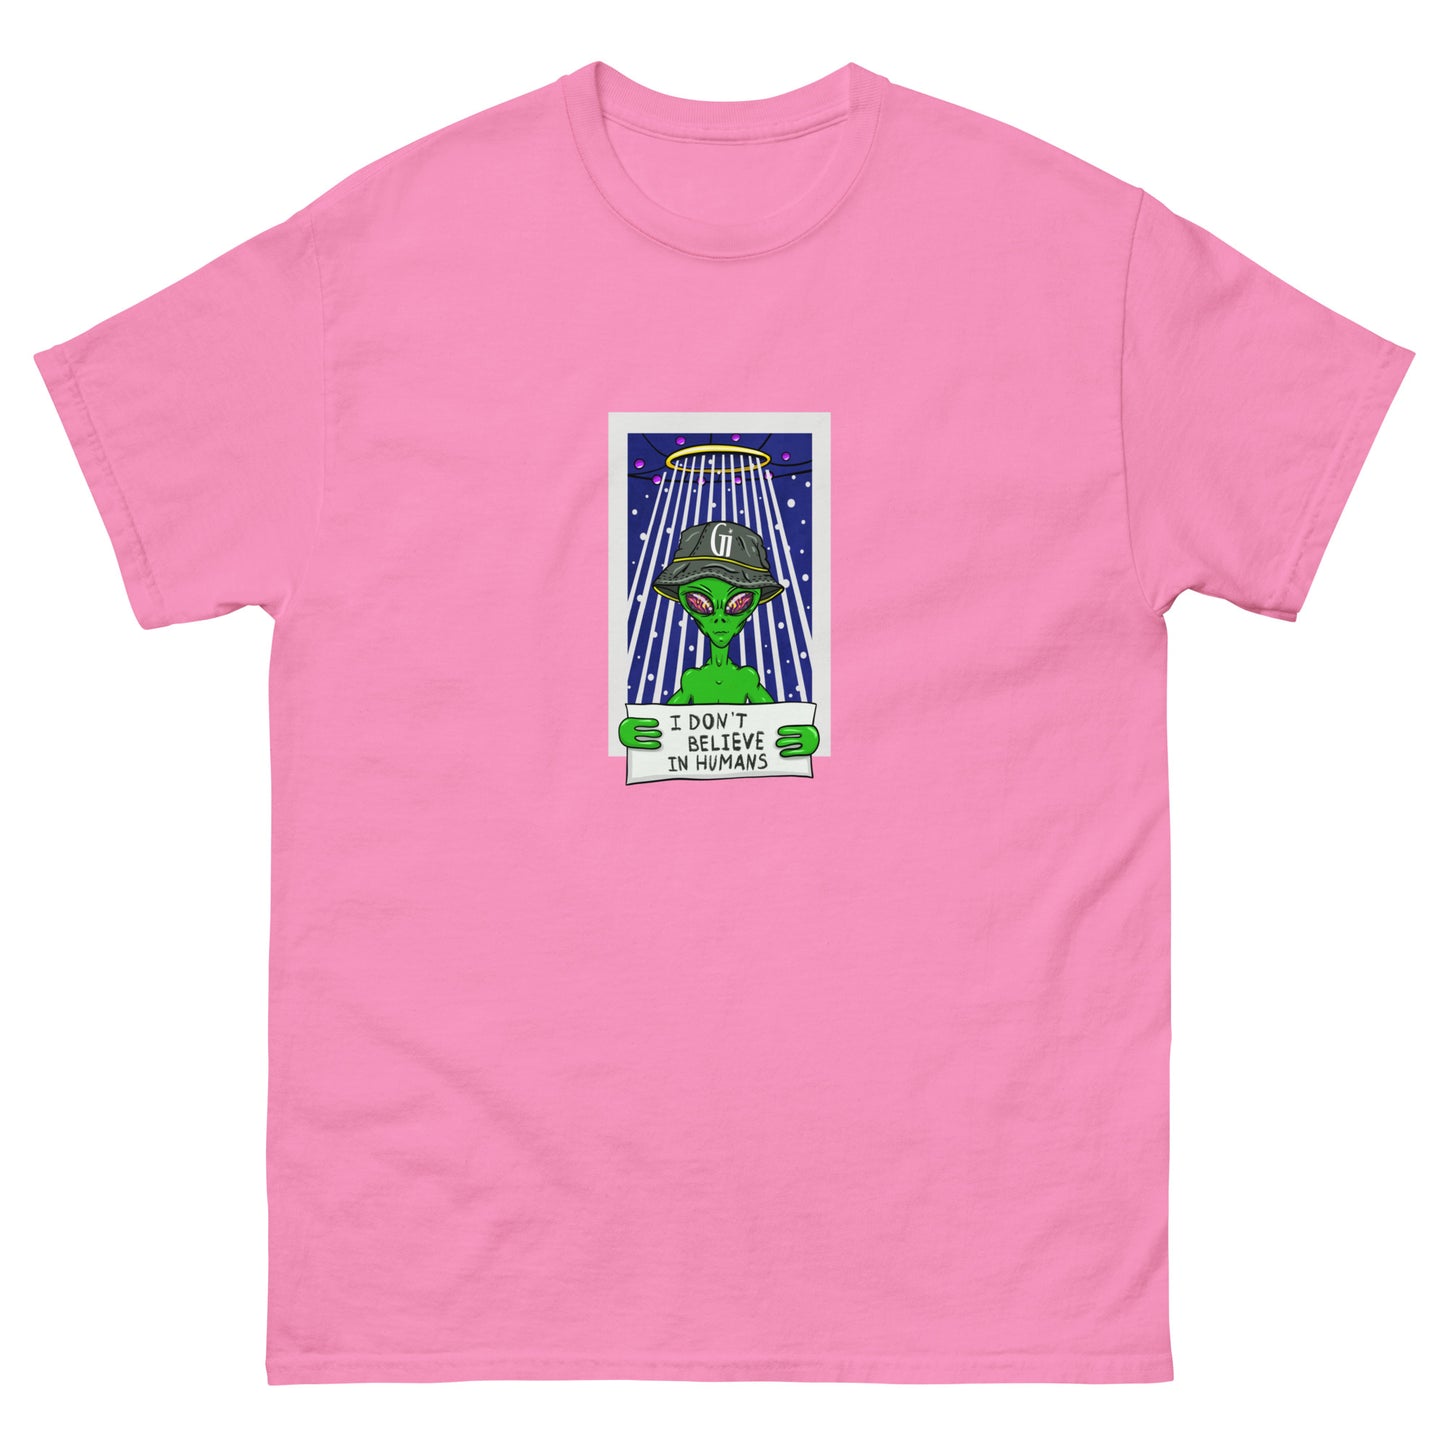 azalea color cotton t shirt with stylish alien